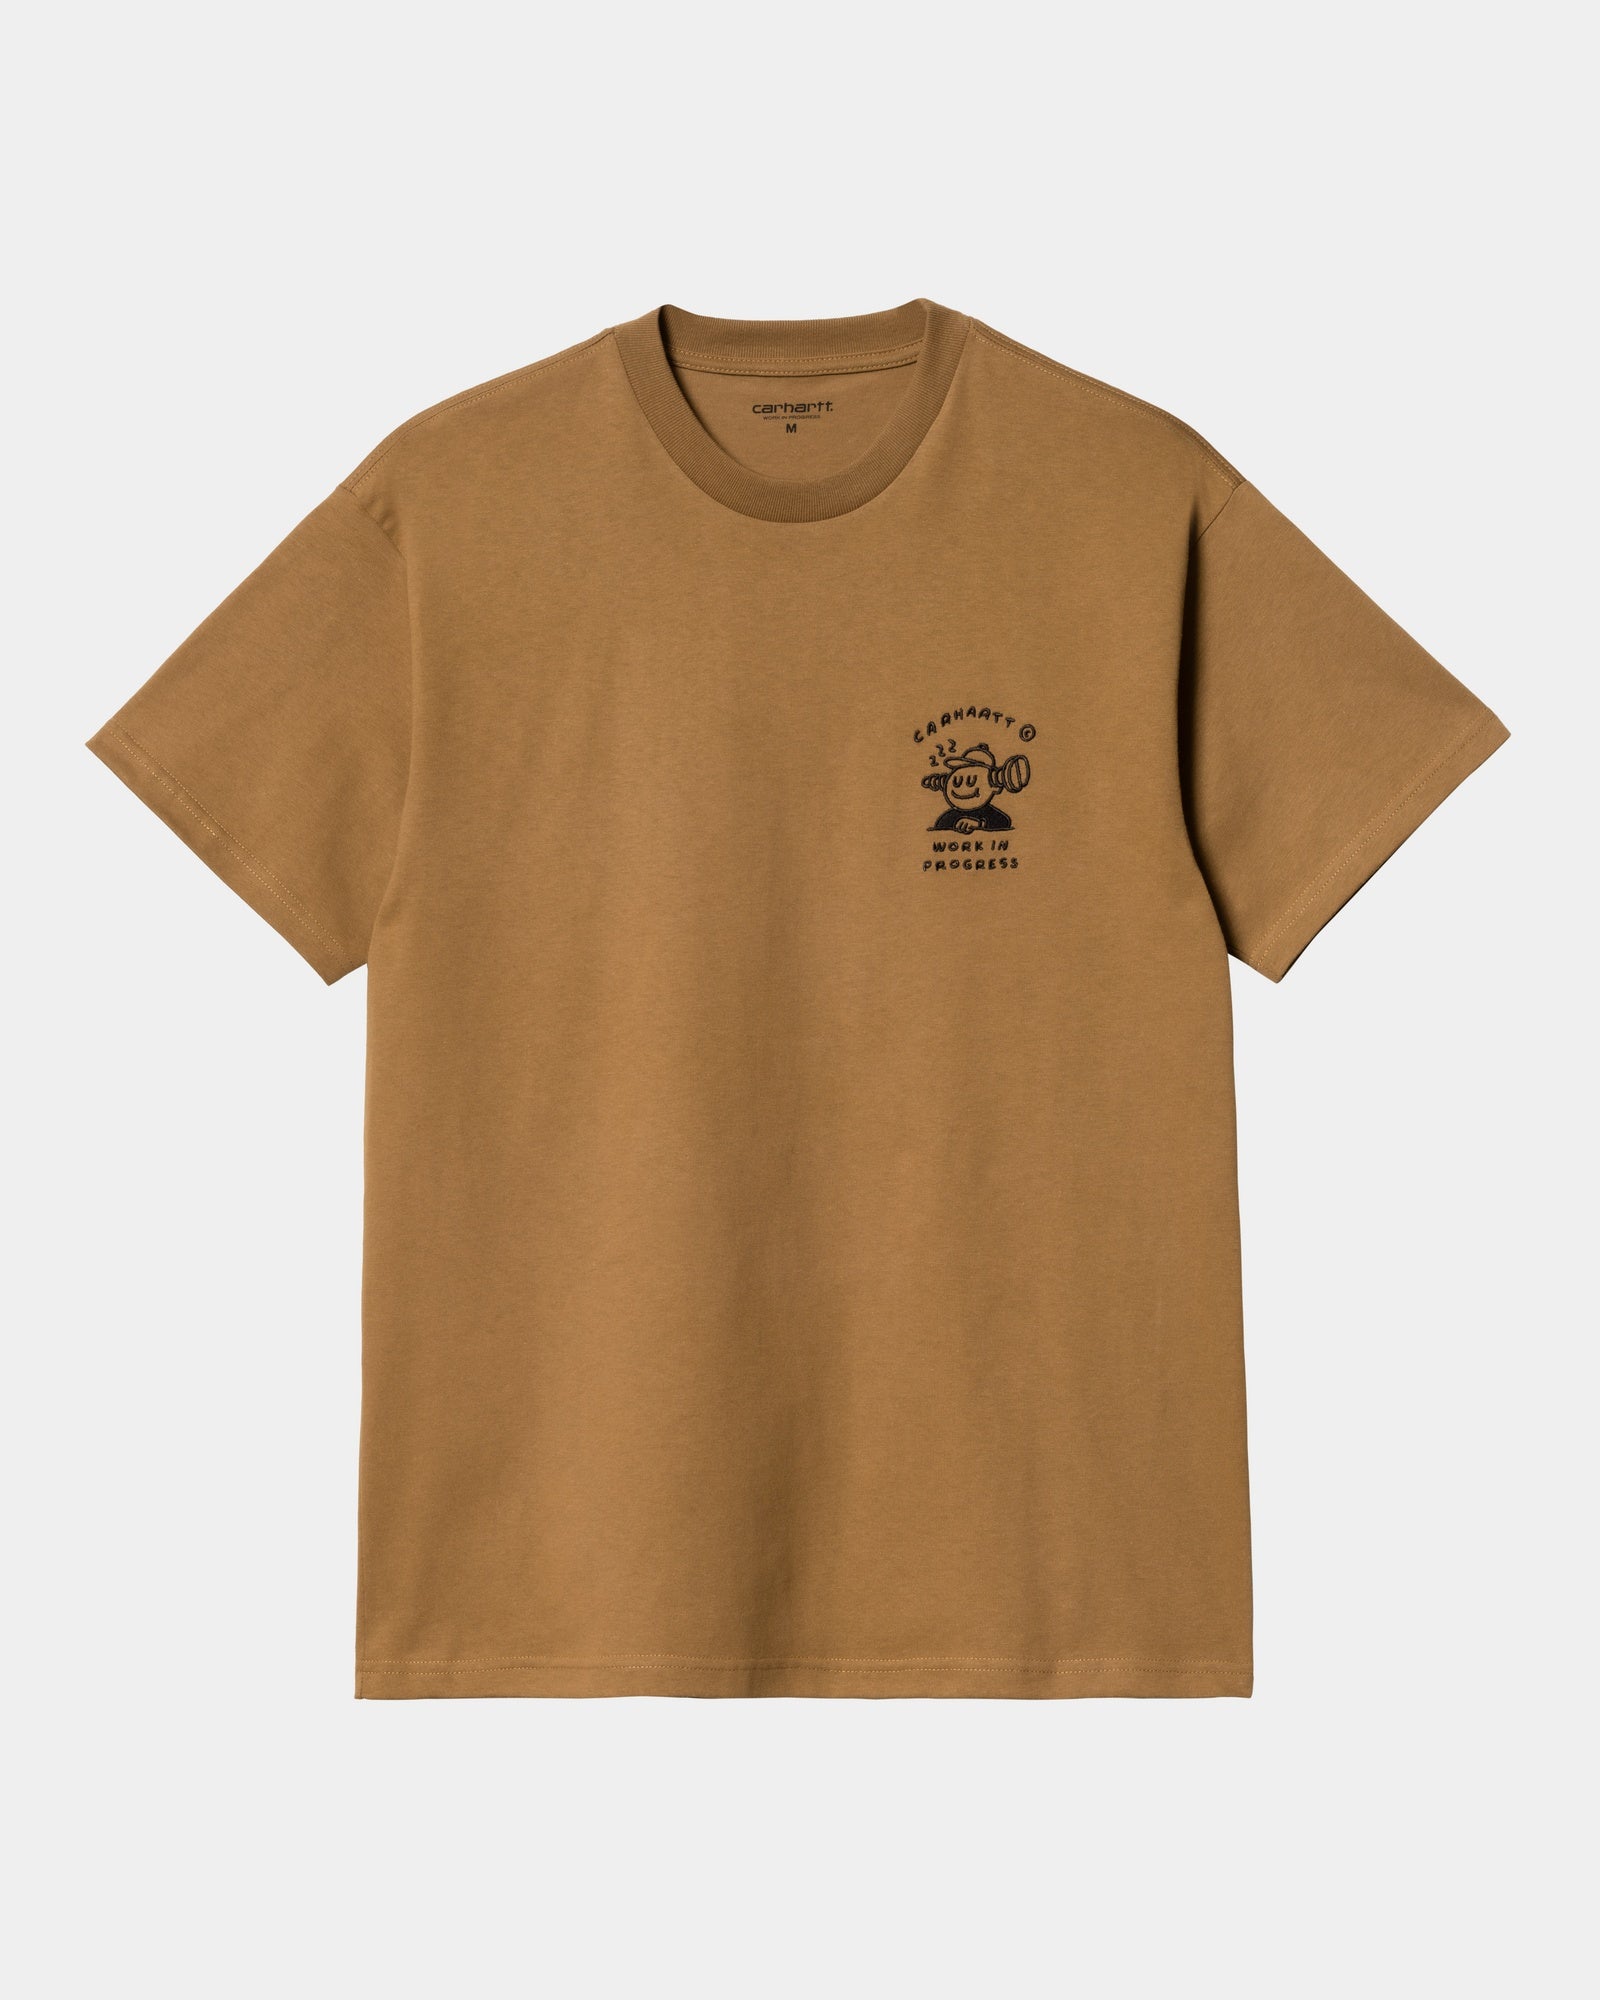 칼하트WIP Carhartt Icons T-Shirt,해밀턴 Hamilton Brown / Black